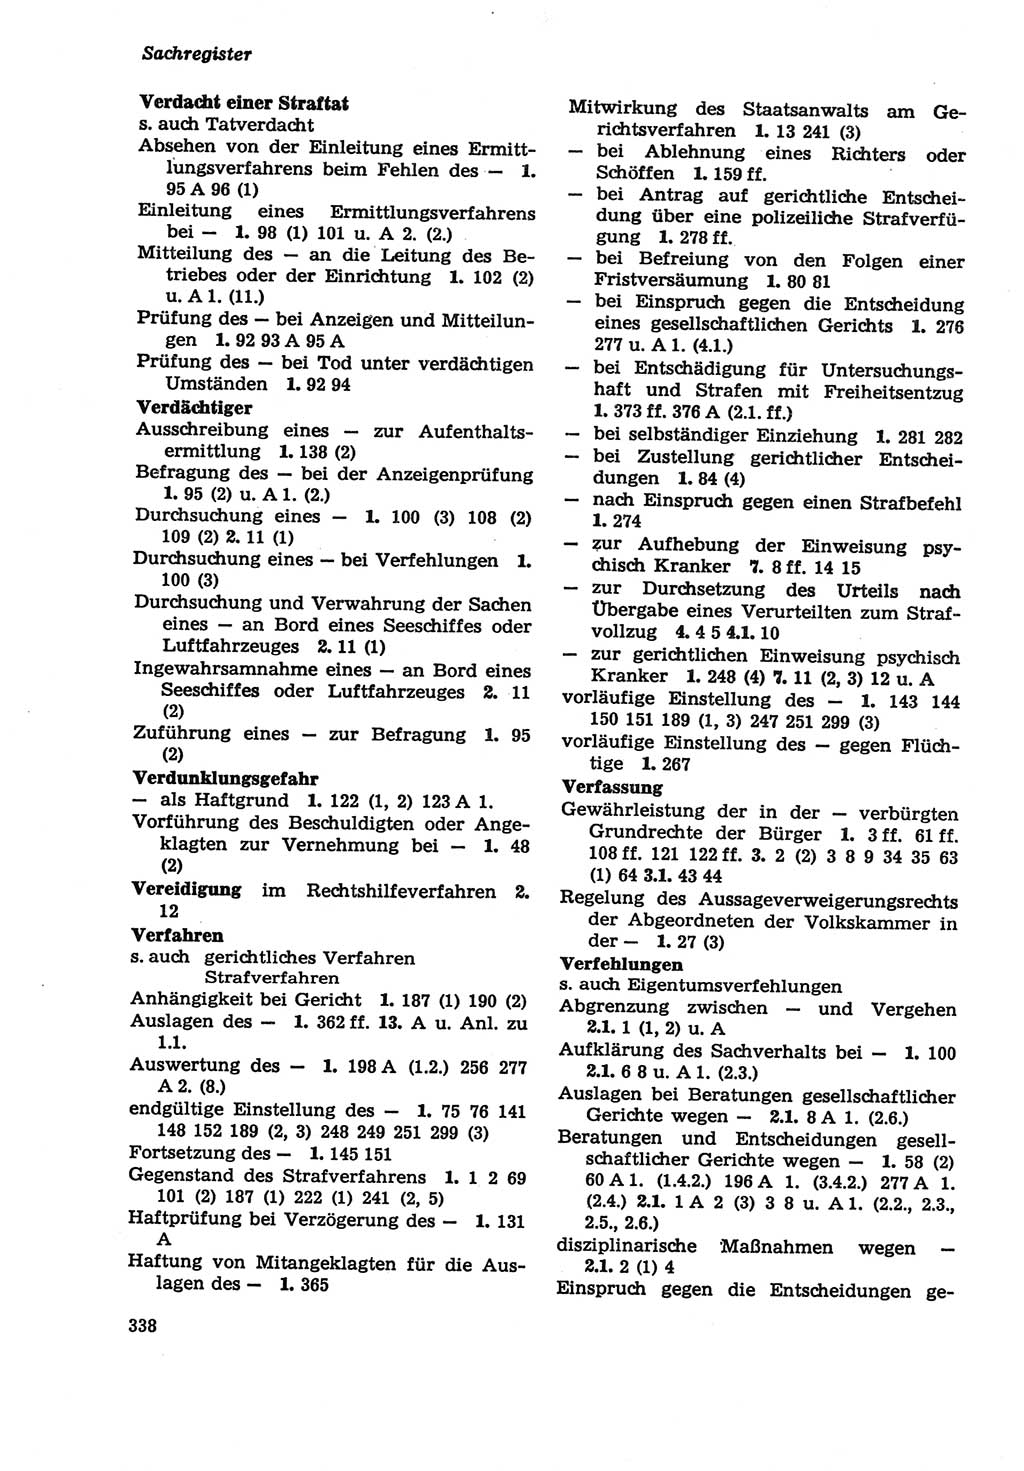 Strafprozeßordnung (StPO) der Deutschen Demokratischen Republik (DDR) sowie angrenzende Gesetze und Bestimmungen 1979, Seite 338 (StPO DDR Ges. Best. 1979, S. 338)